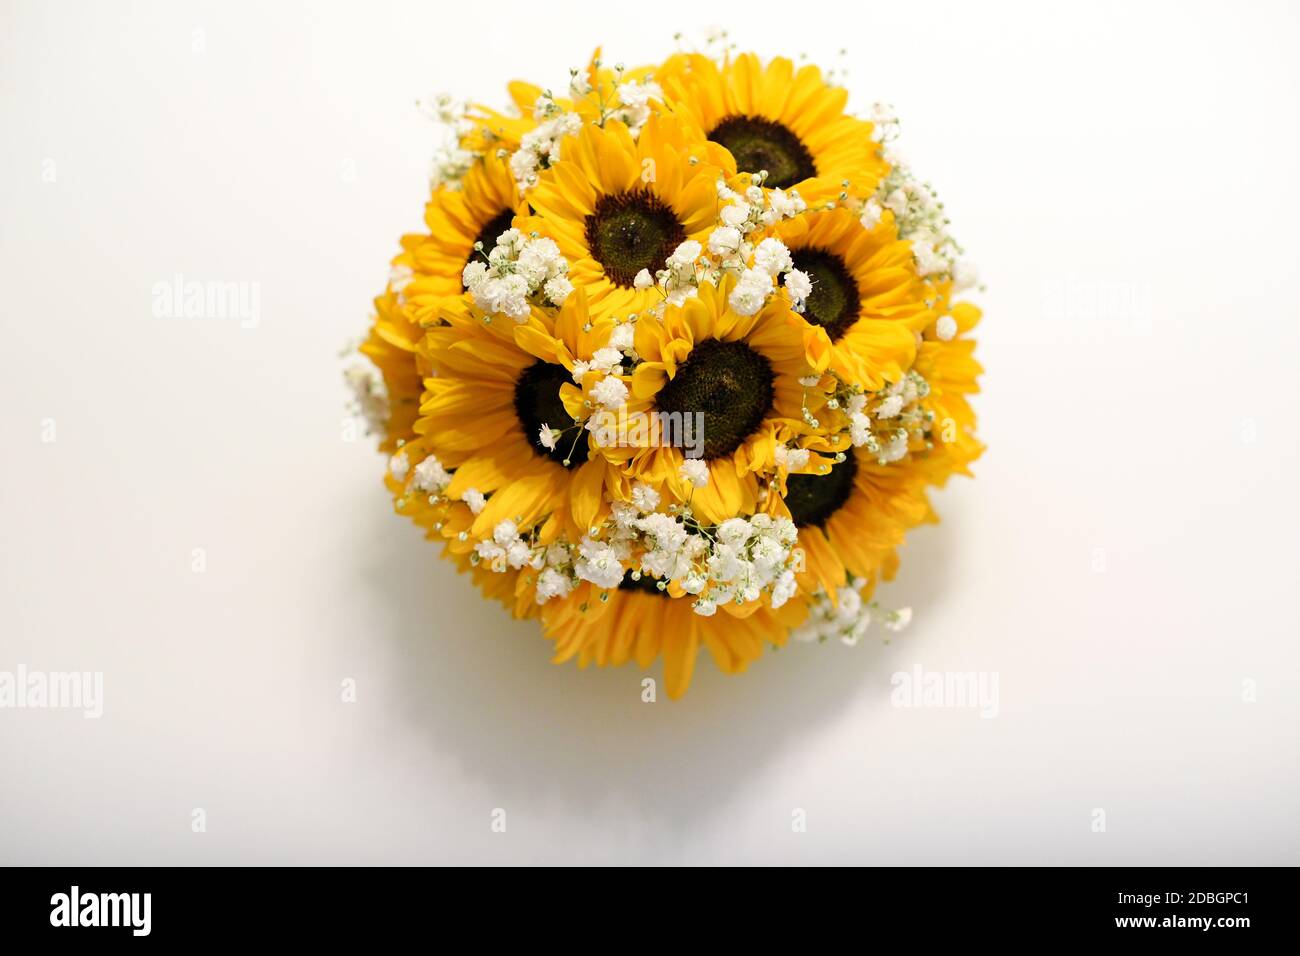 Rotondo posy di girasoli gialli colorati intervallati da bianco opaco blossom visto dall'alto in basso su bianco con copyspace Foto Stock